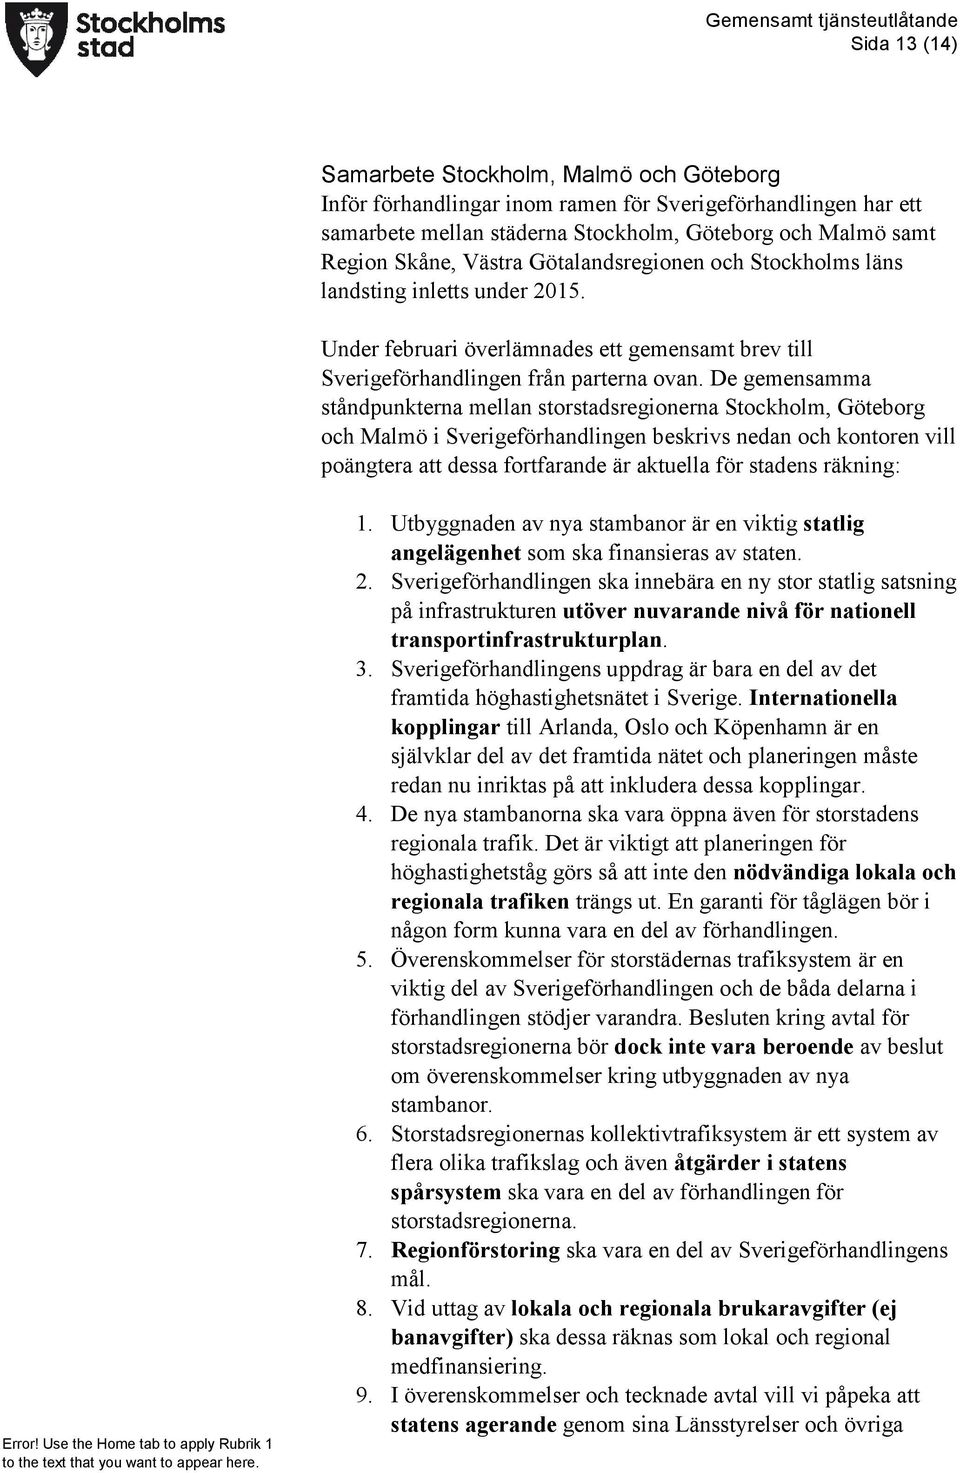 De gemensamma ståndpunkterna mellan storstadsregionerna Stockholm, Göteborg och Malmö i Sverigeförhandlingen beskrivs nedan och kontoren vill poängtera att dessa fortfarande är aktuella för stadens